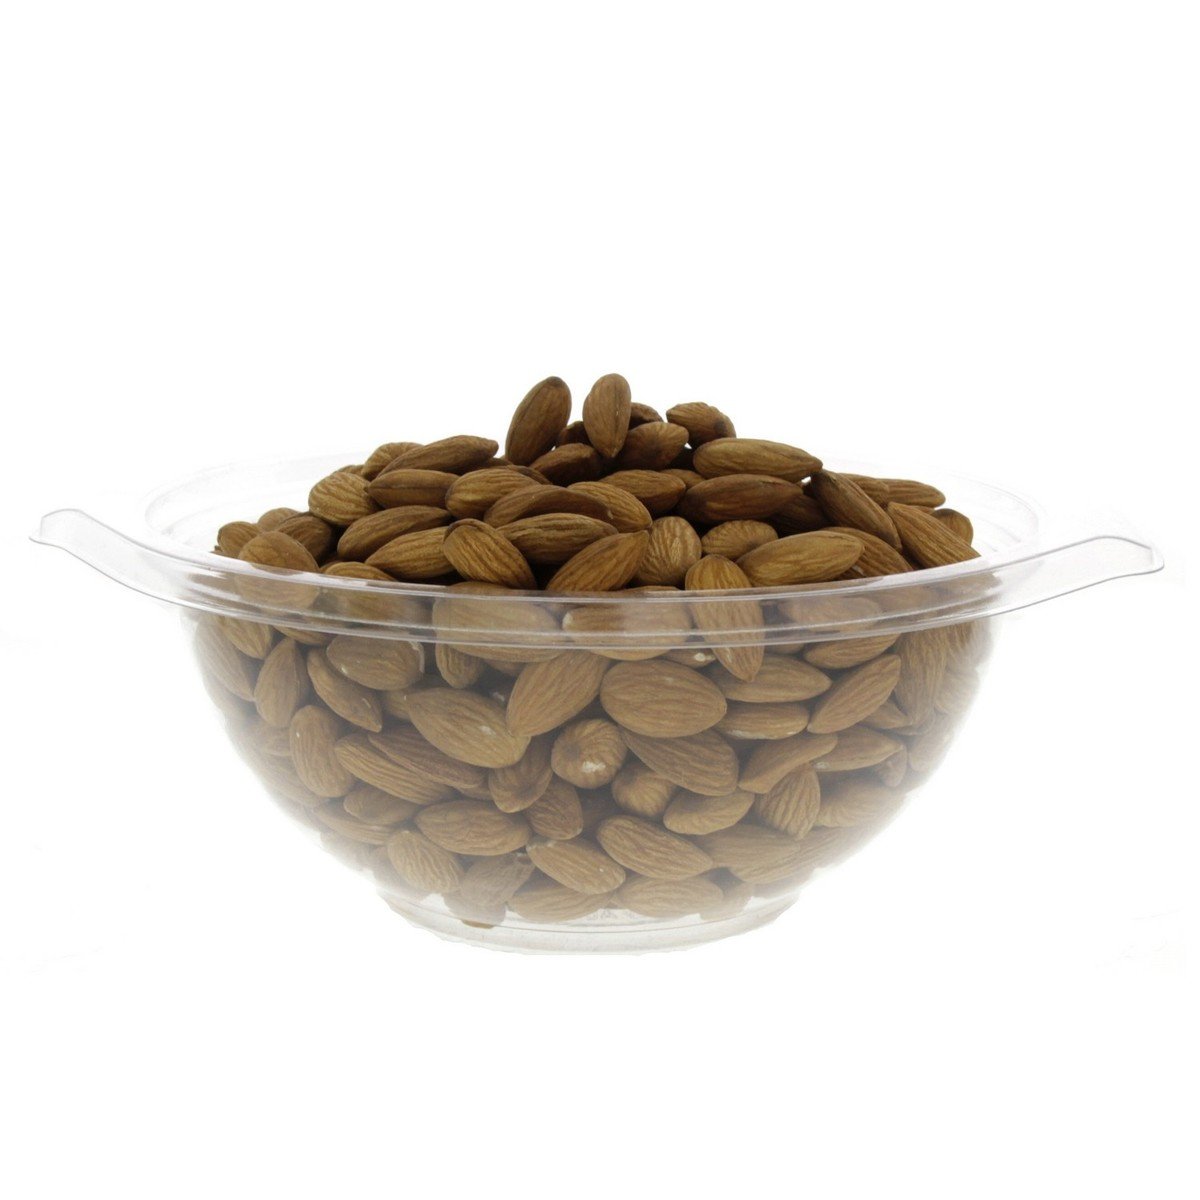 اشتري قم بشراء لوز امريكي 27/30 1 كجم Online at Best Price من الموقع - من لولو هايبر ماركت Roastery Nuts في الامارات